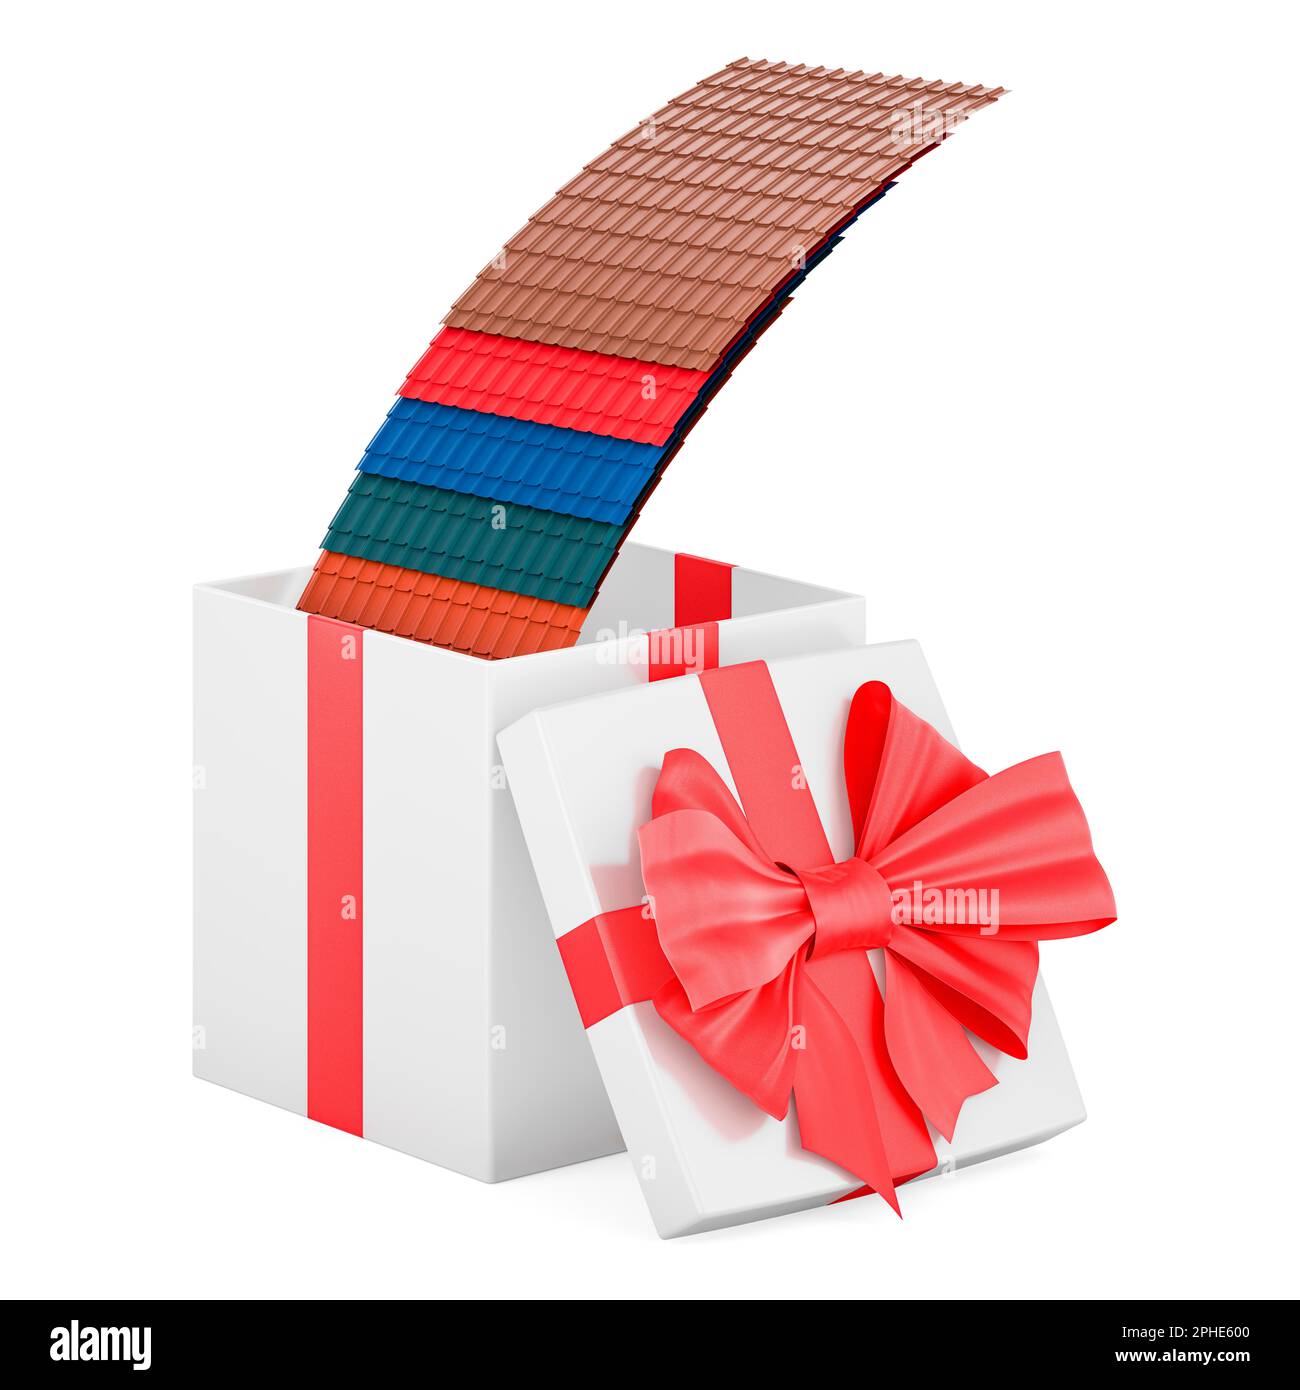 Tuiles de toit en métal de couleur à l'intérieur de la boîte cadeau, concept de présent. 3D rendu isolé sur fond blanc Banque D'Images